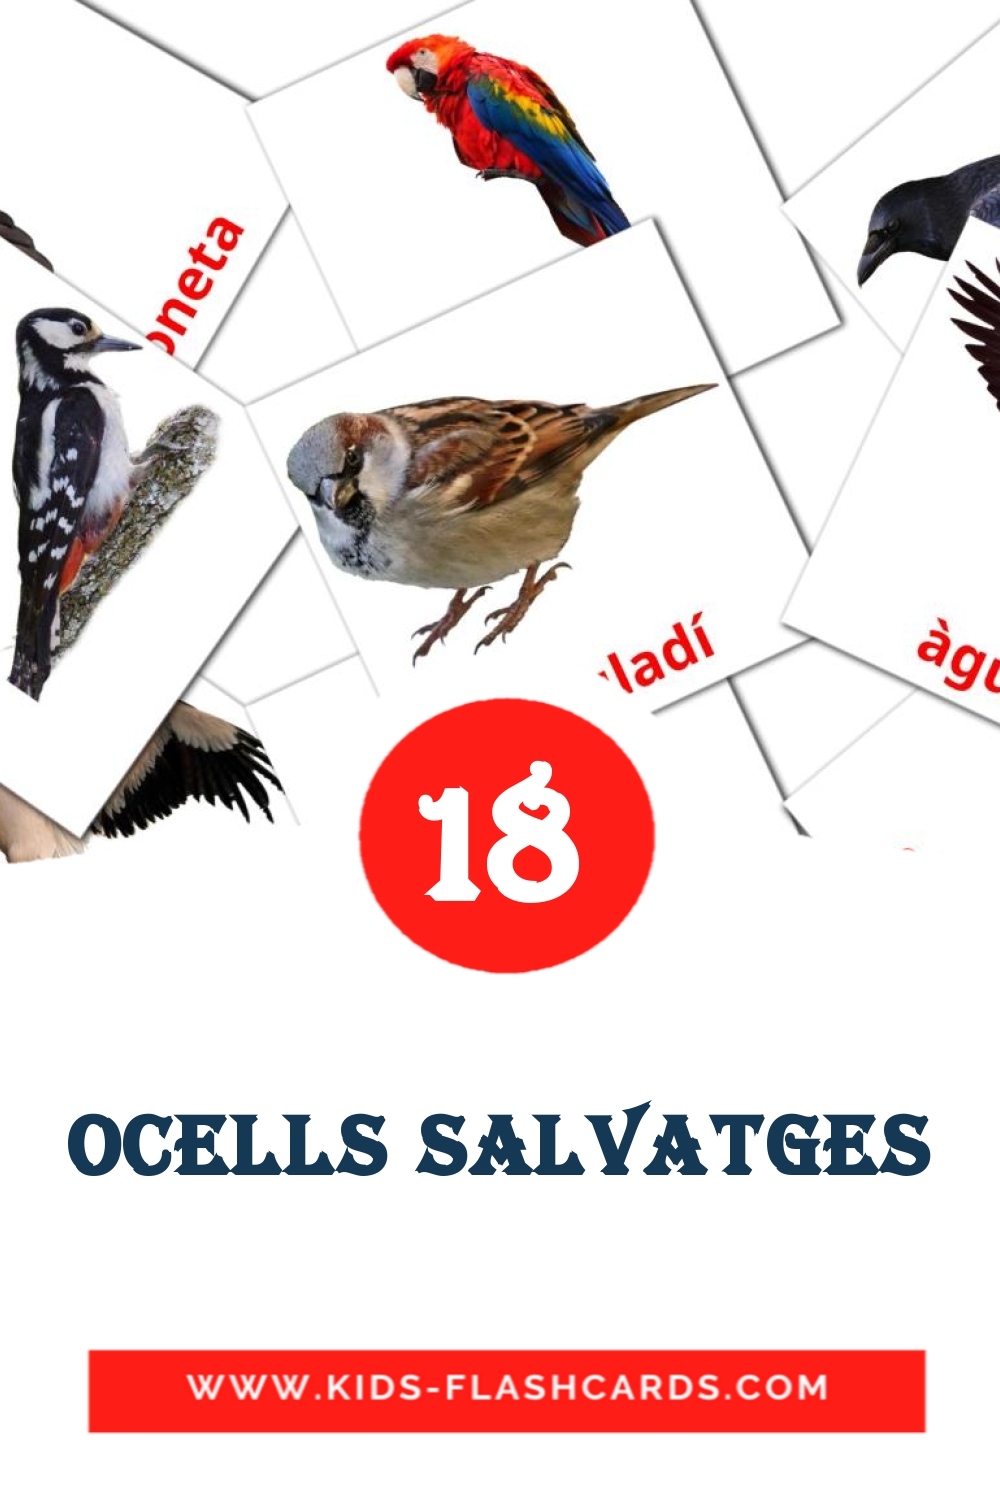 18 carte illustrate di Ocells salvatges per la scuola materna in catalano